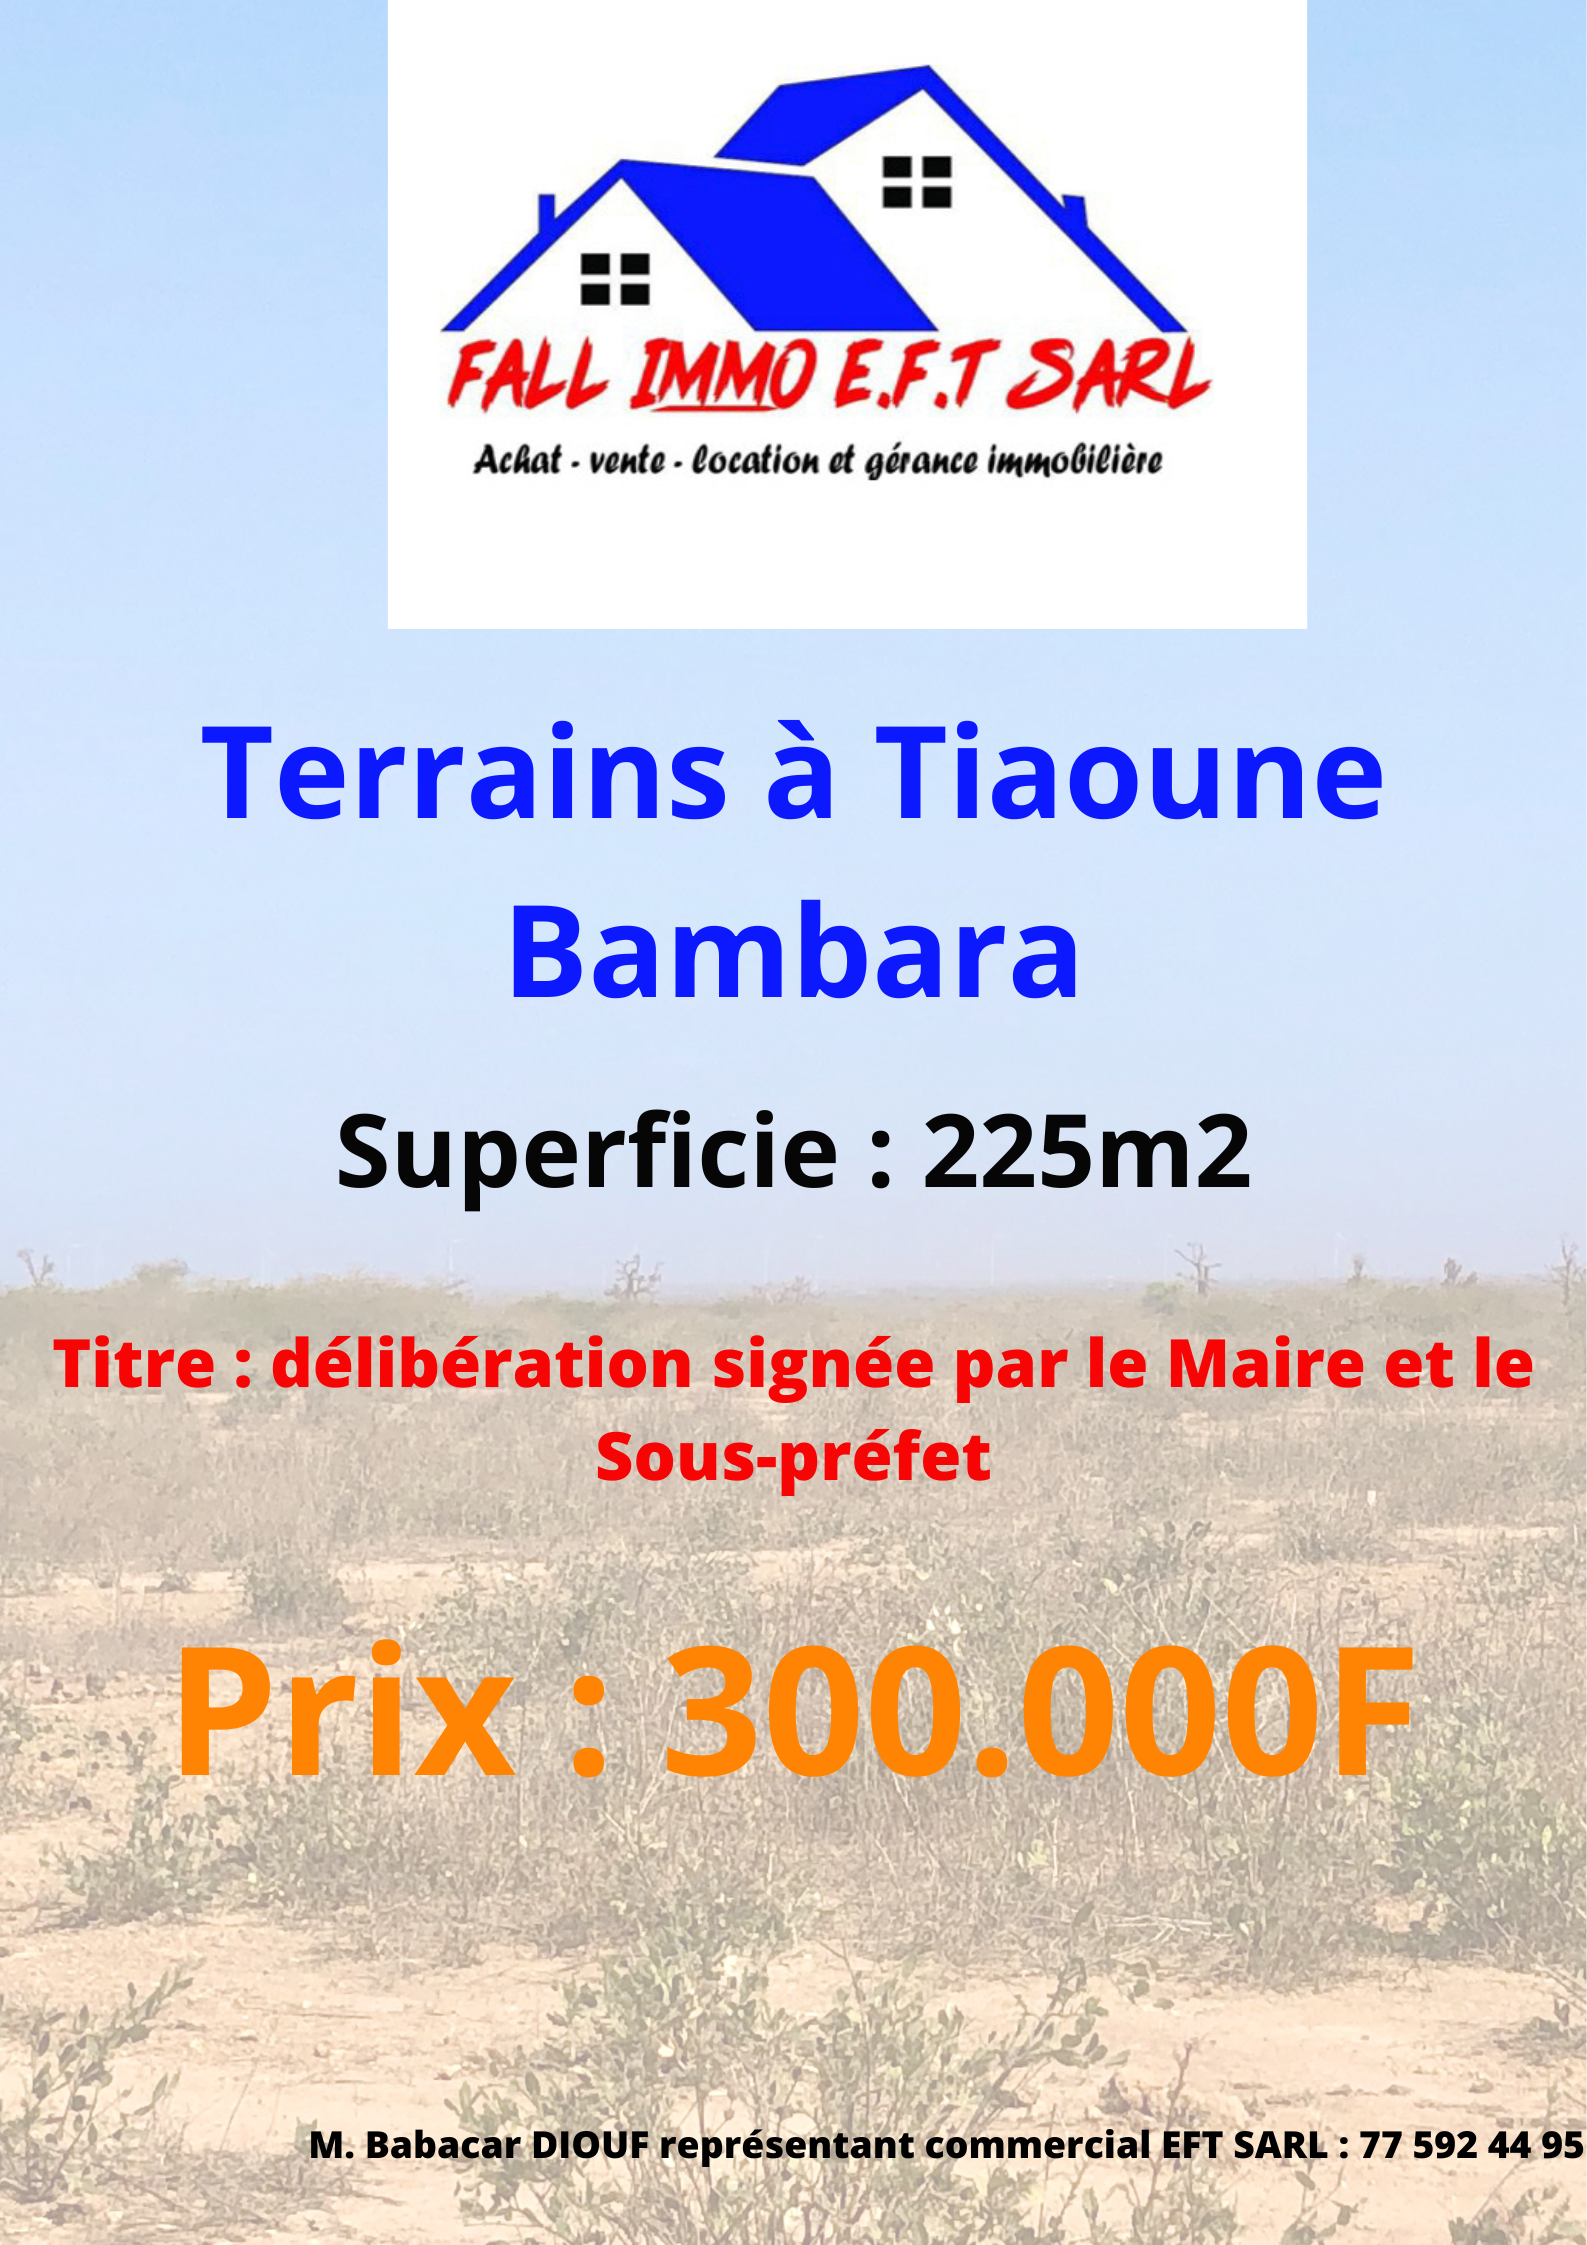 Terrains Tiaoune Bambara, Thiès EFT SARL continue sa lancée de mettre à votre disposition des terrains sûrs et fiables dans la région de Thiès, sur la route de Tivaouane. Que vous soyez au Sénégal ou dans la diaspora, nous vous accompagnons dans toute la procédure d’acquisition. 
Site : tiaoune bambara 
Superficie : 225m2
Titre : délibération avec double signature du maire et du sous-préfet 
Prix : 300.000F
Tel : (+221) 775924495